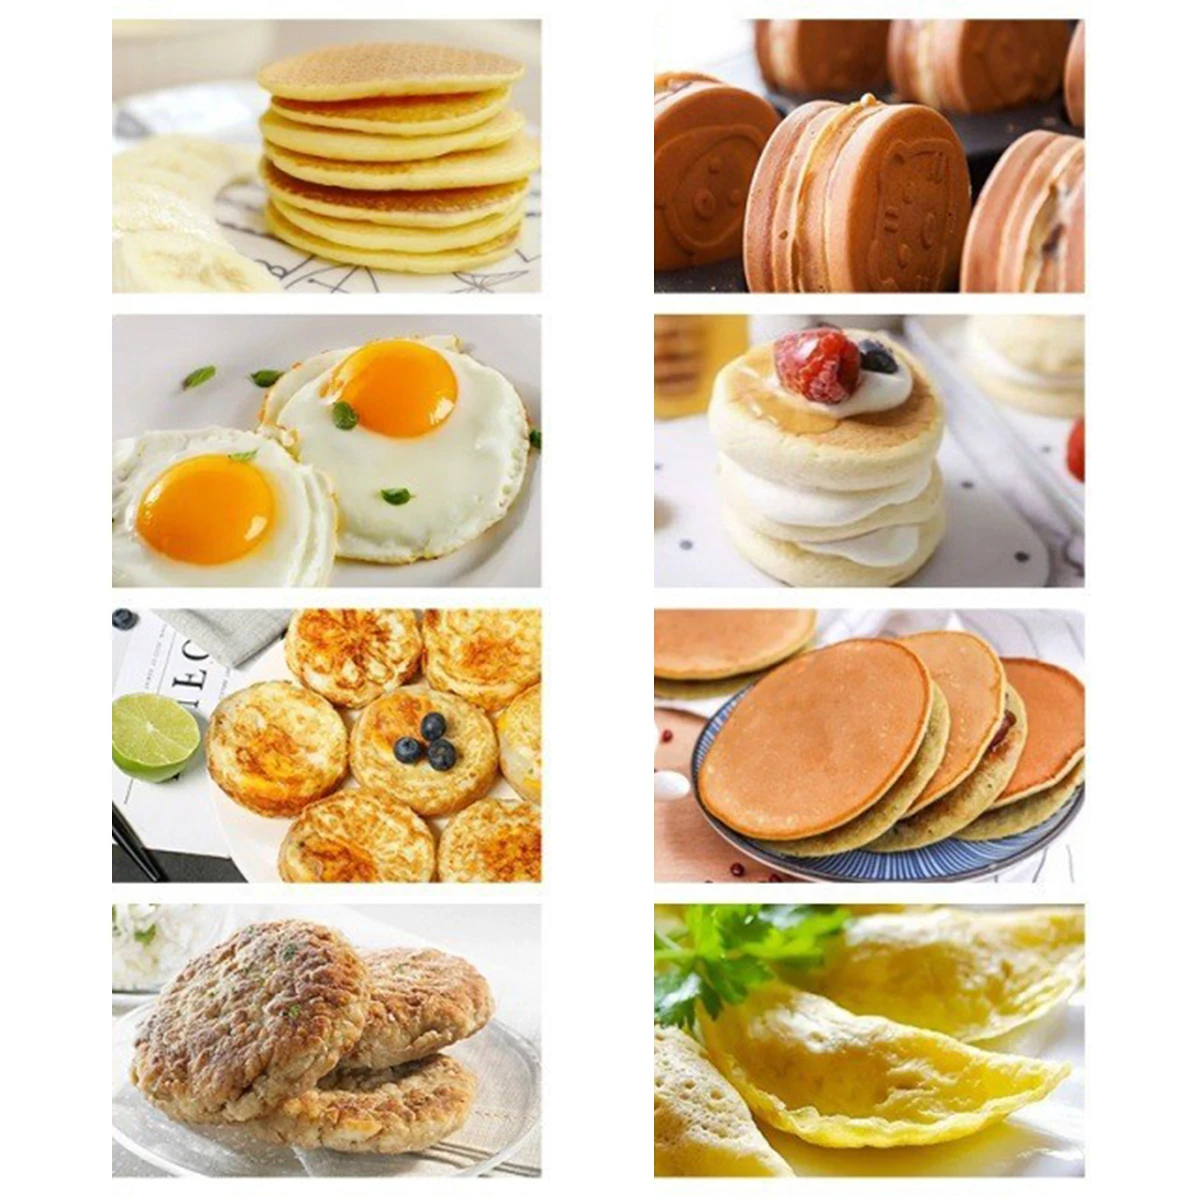 https://ae01.alicdn.com/kf/S4c7127cfa50a46108ba62b911ad691e78/Mini-Pancake-Pan-with-Handle-Pancake-Maker-Pan-Non-stick-Stovetop-Egg-Frying-Pan-Breakfast-Griddle.jpg